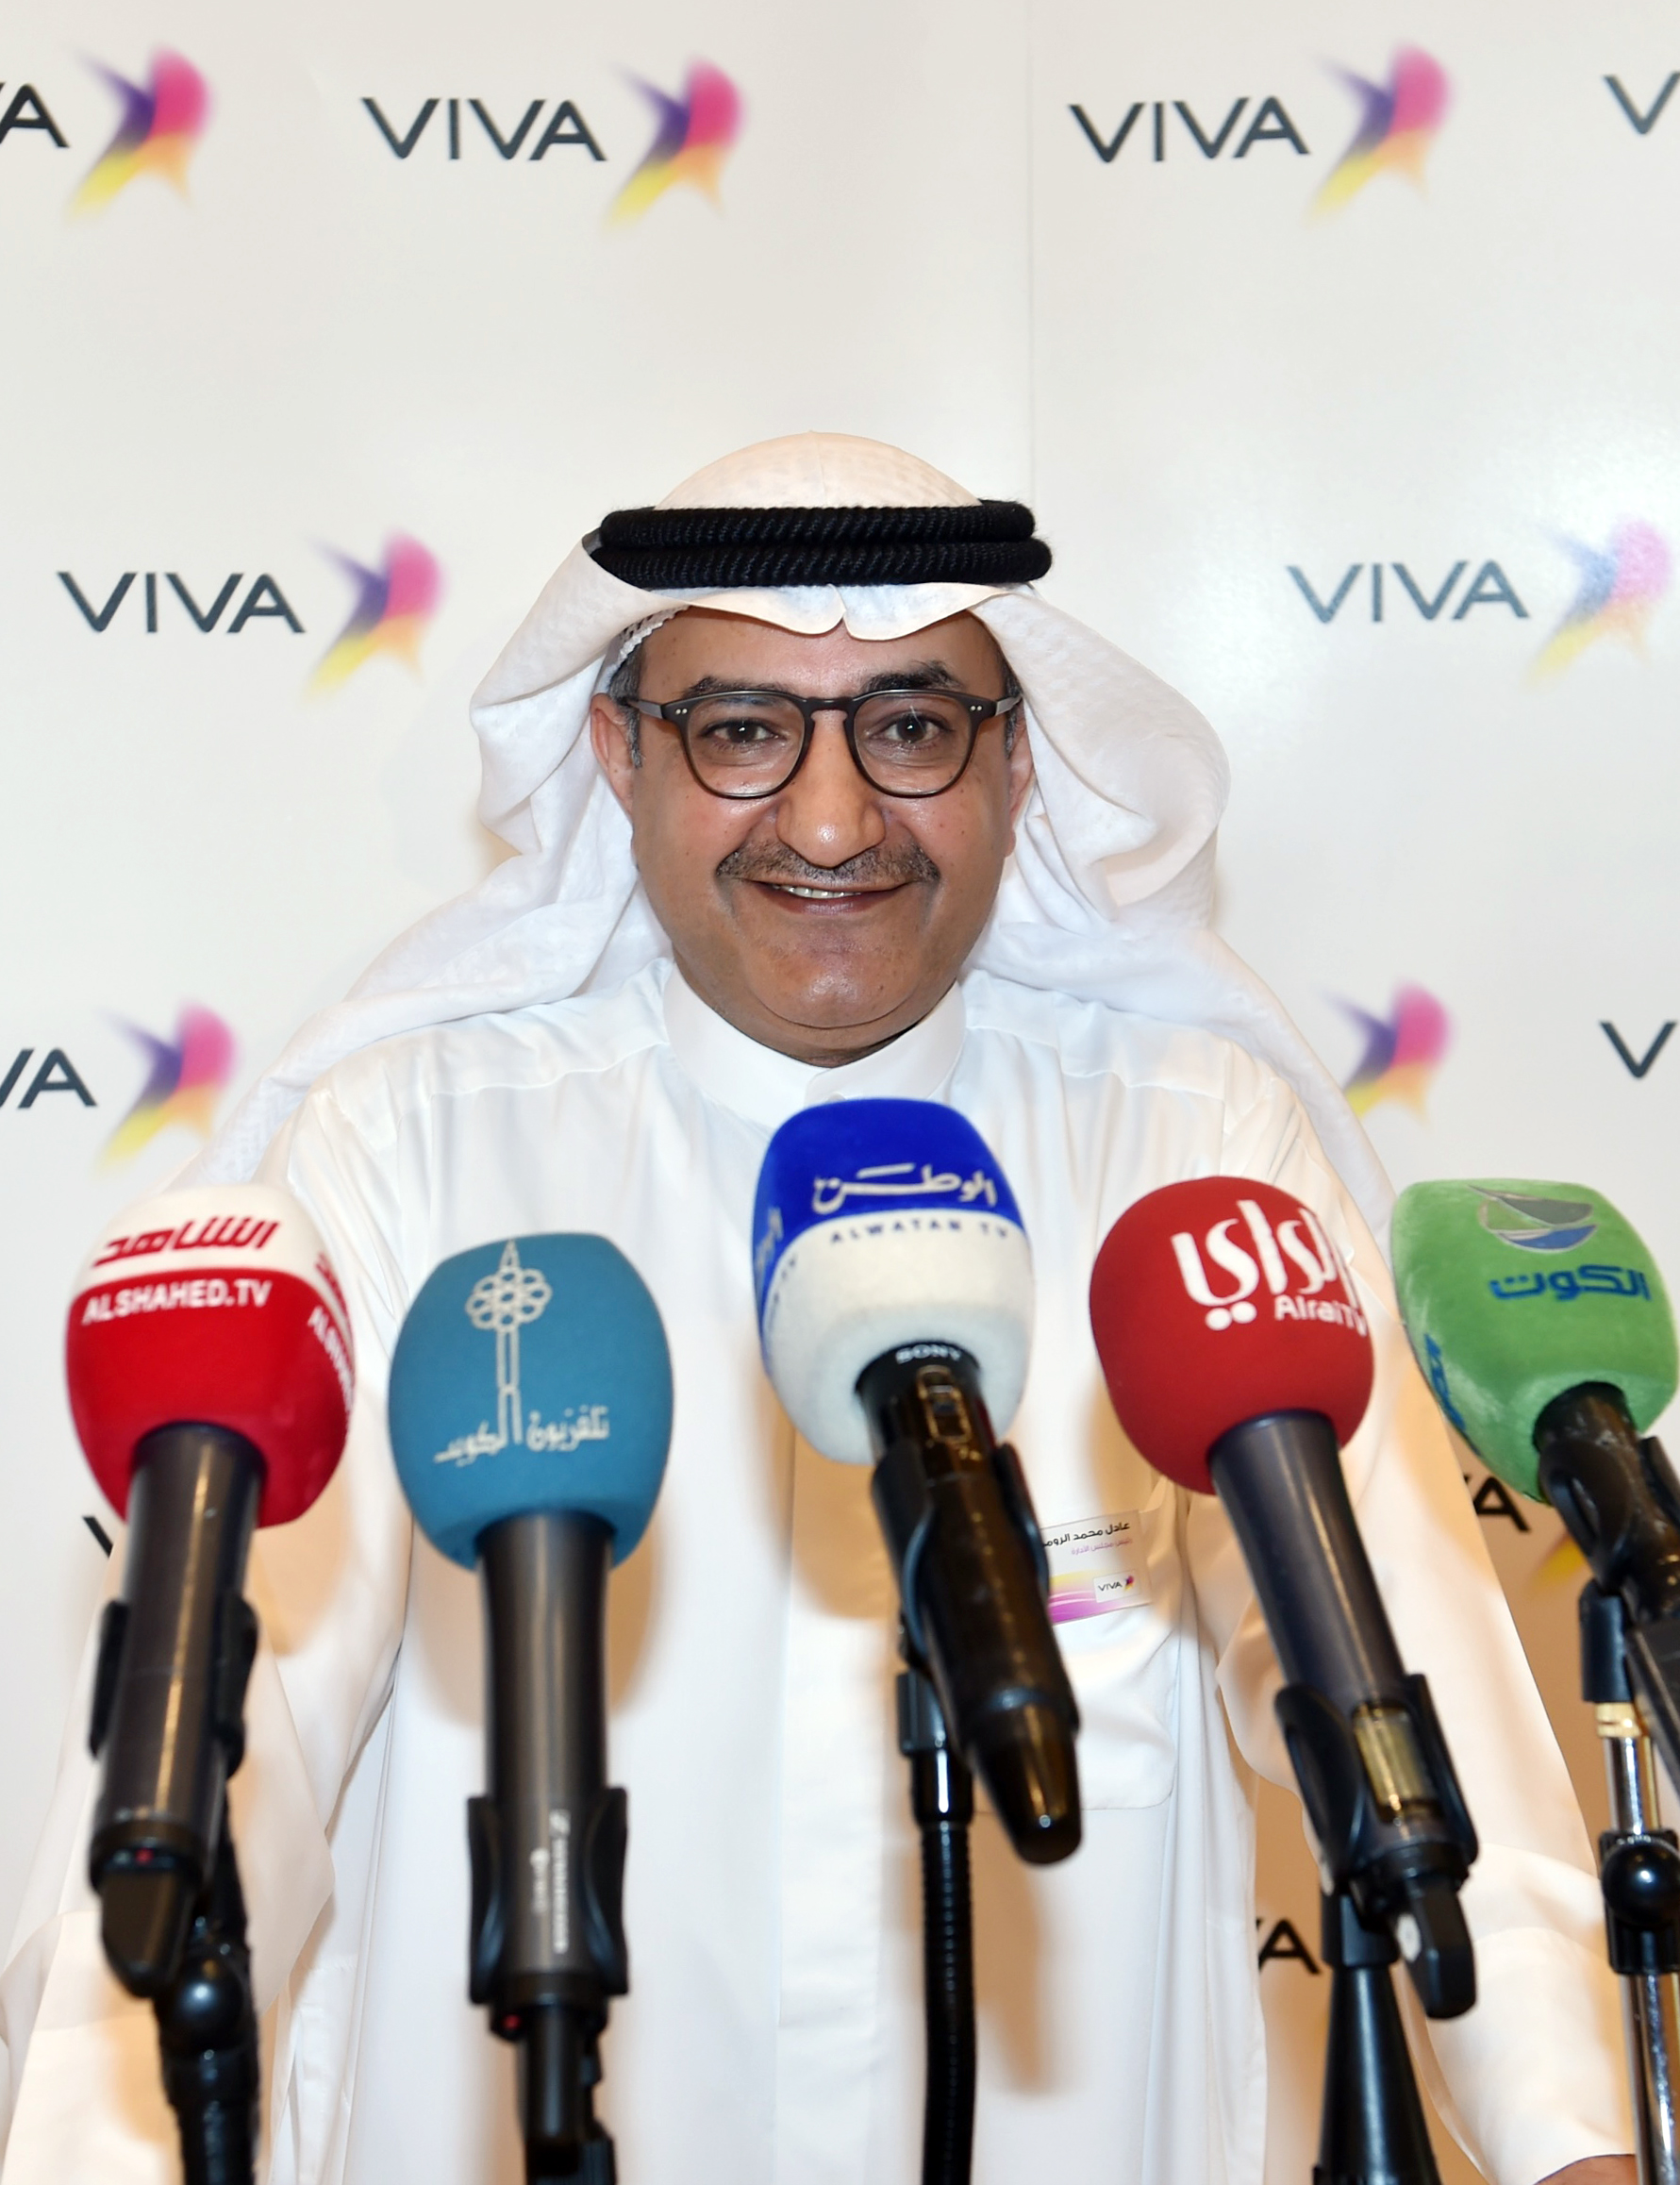 VIVA Board Chairman Adel Al Roumi said